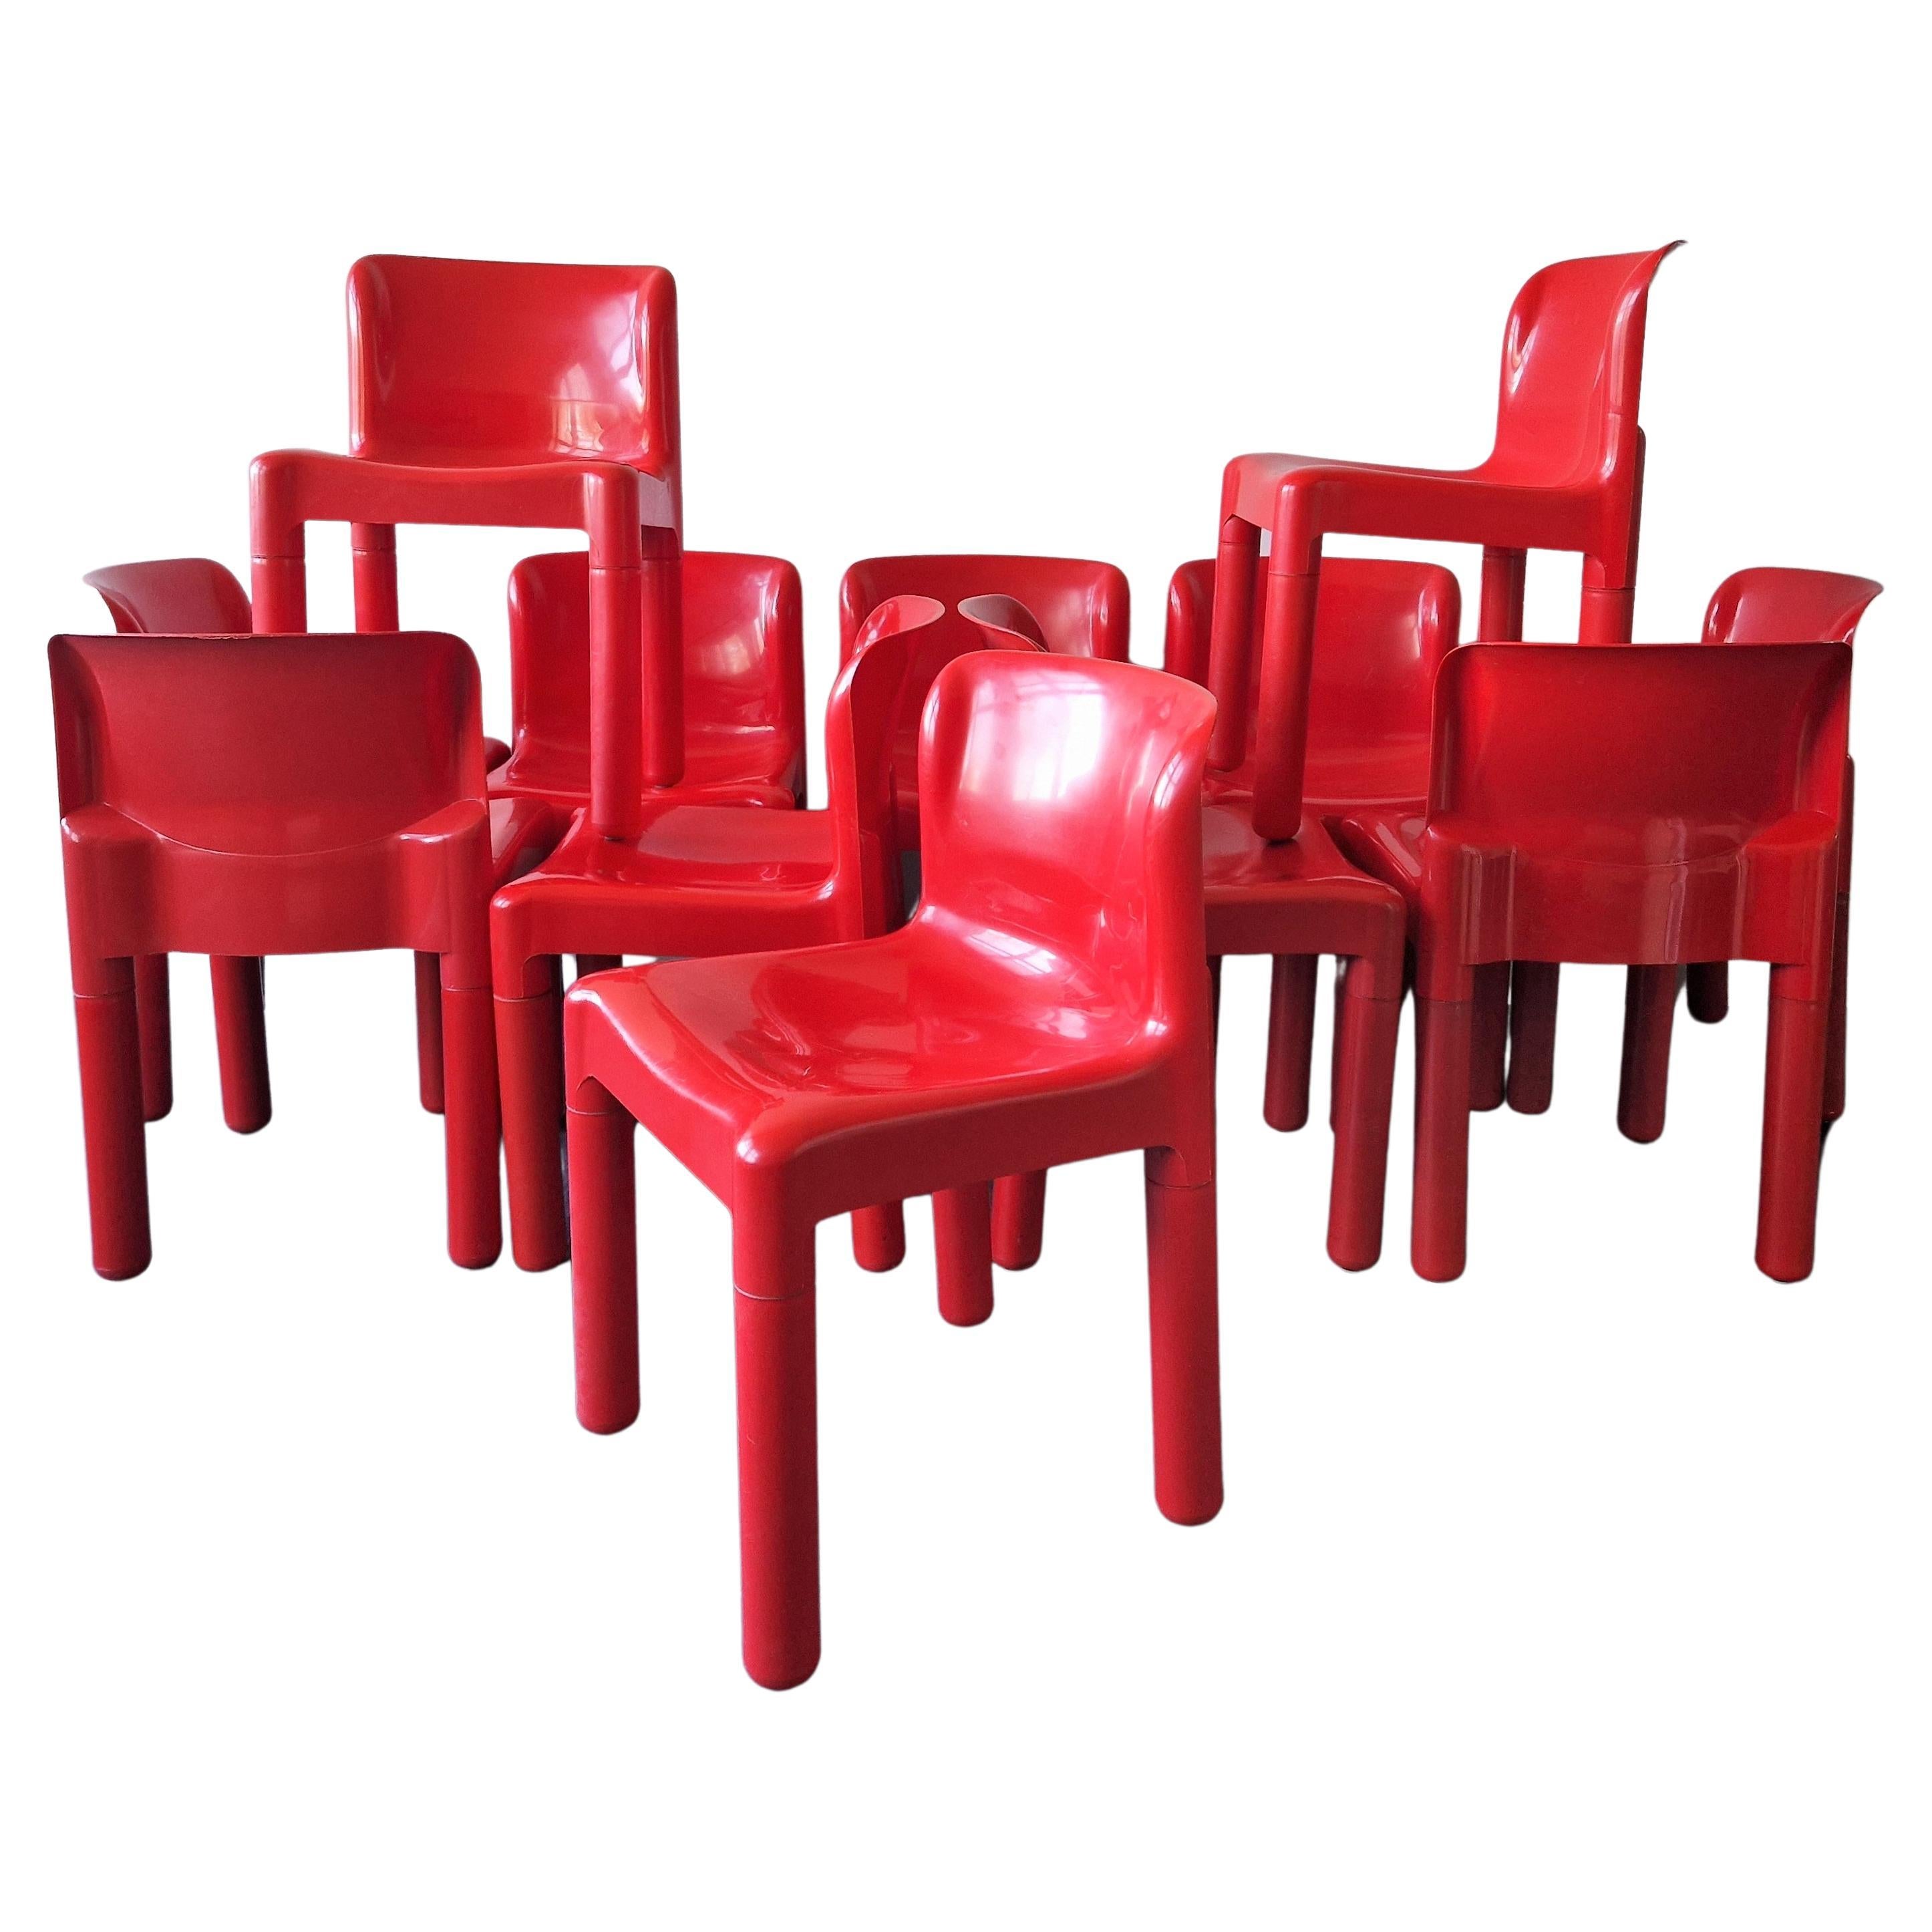 Roter 4875-Stuhl von Carlo Bartoli für Kartell, Italien 1972